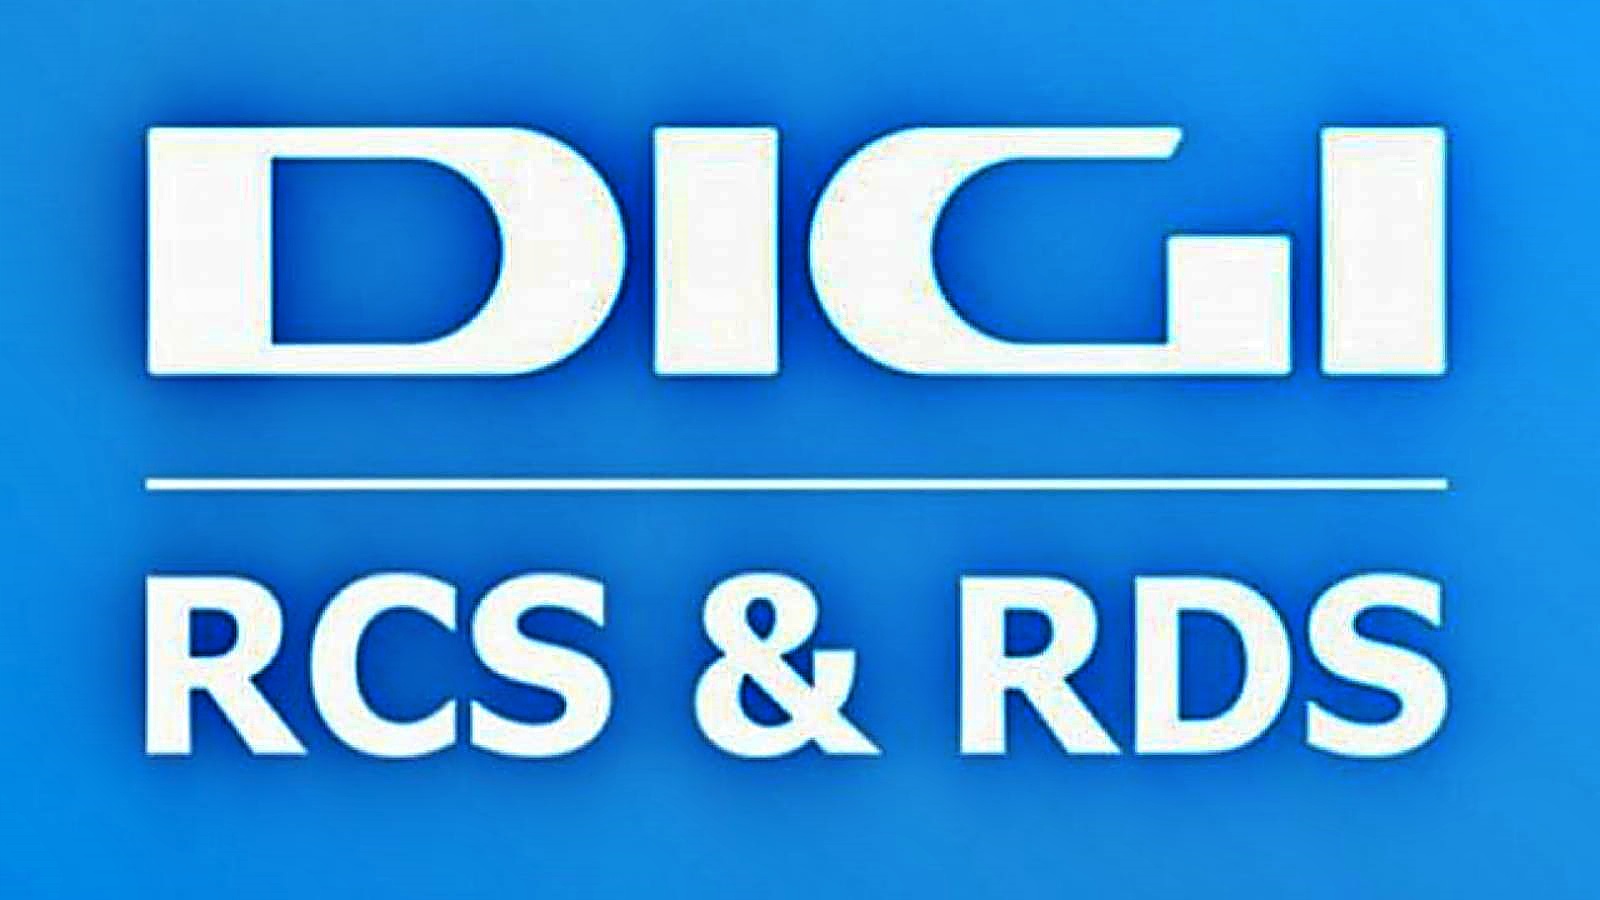 DIGI RCS & RDS Mål MILLIONER af kunder over hele Rumænien